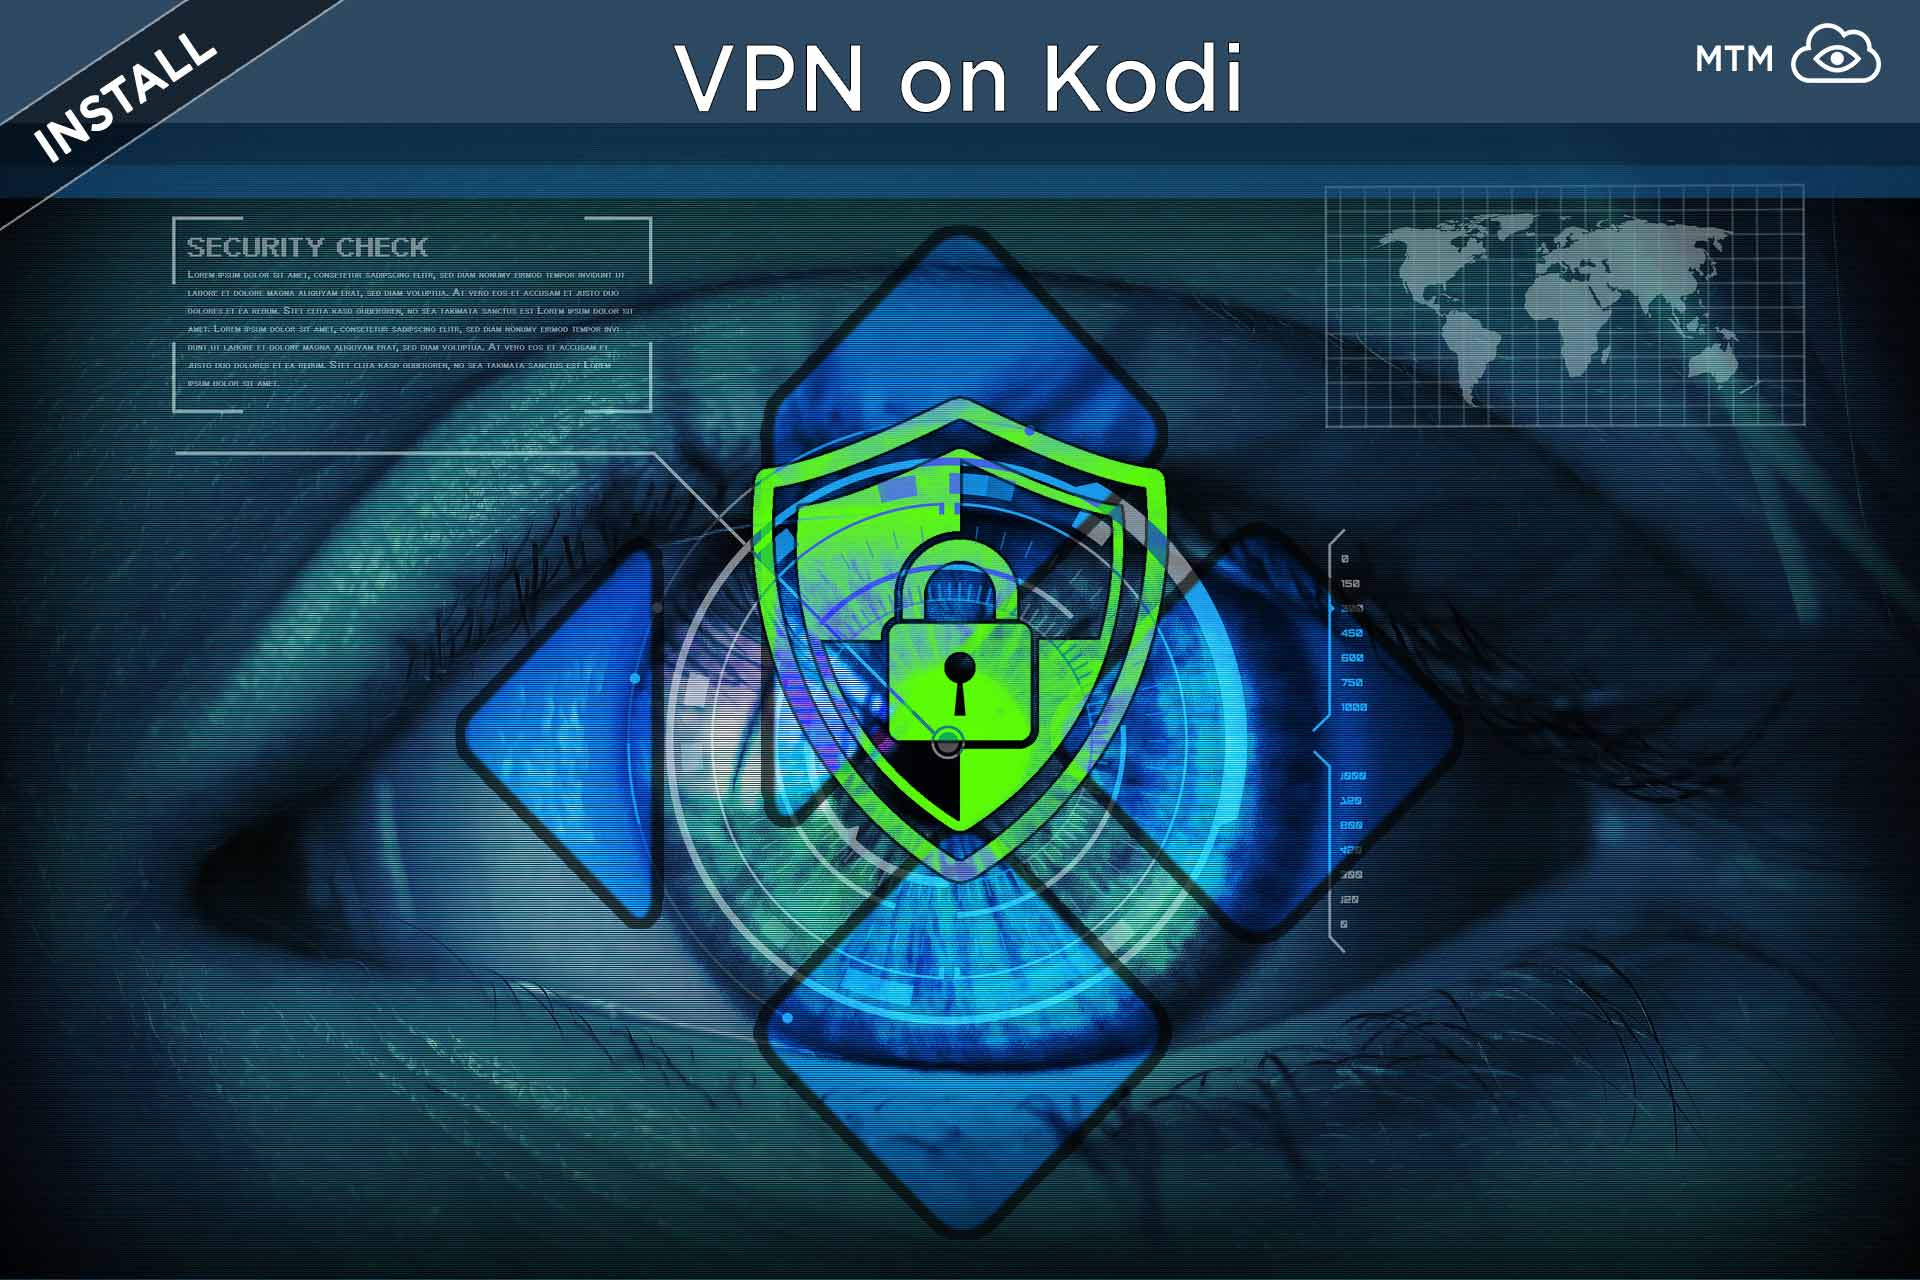 Nola instalatu Kodi VPN doako korronteak modu seguruan eta anonimoan sartzeko